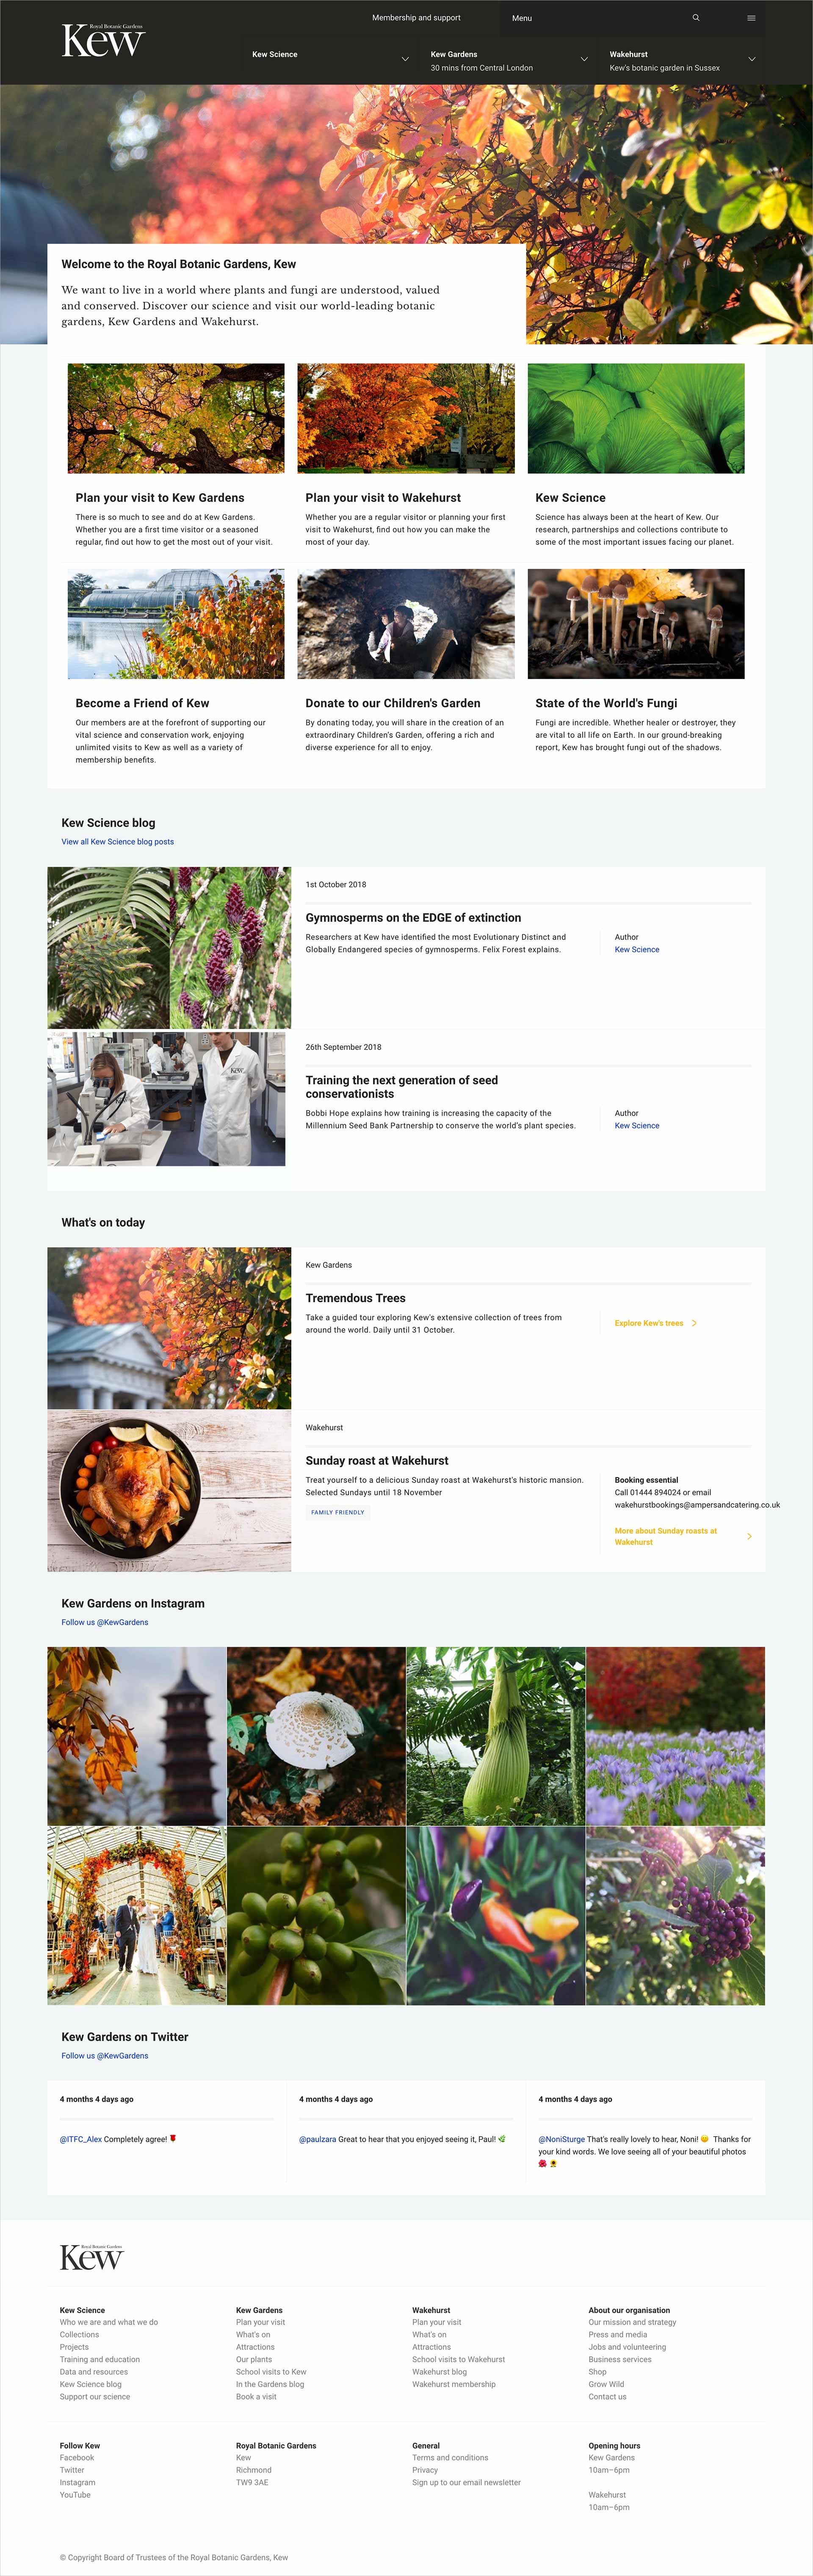 Kew Gardens' website homepage